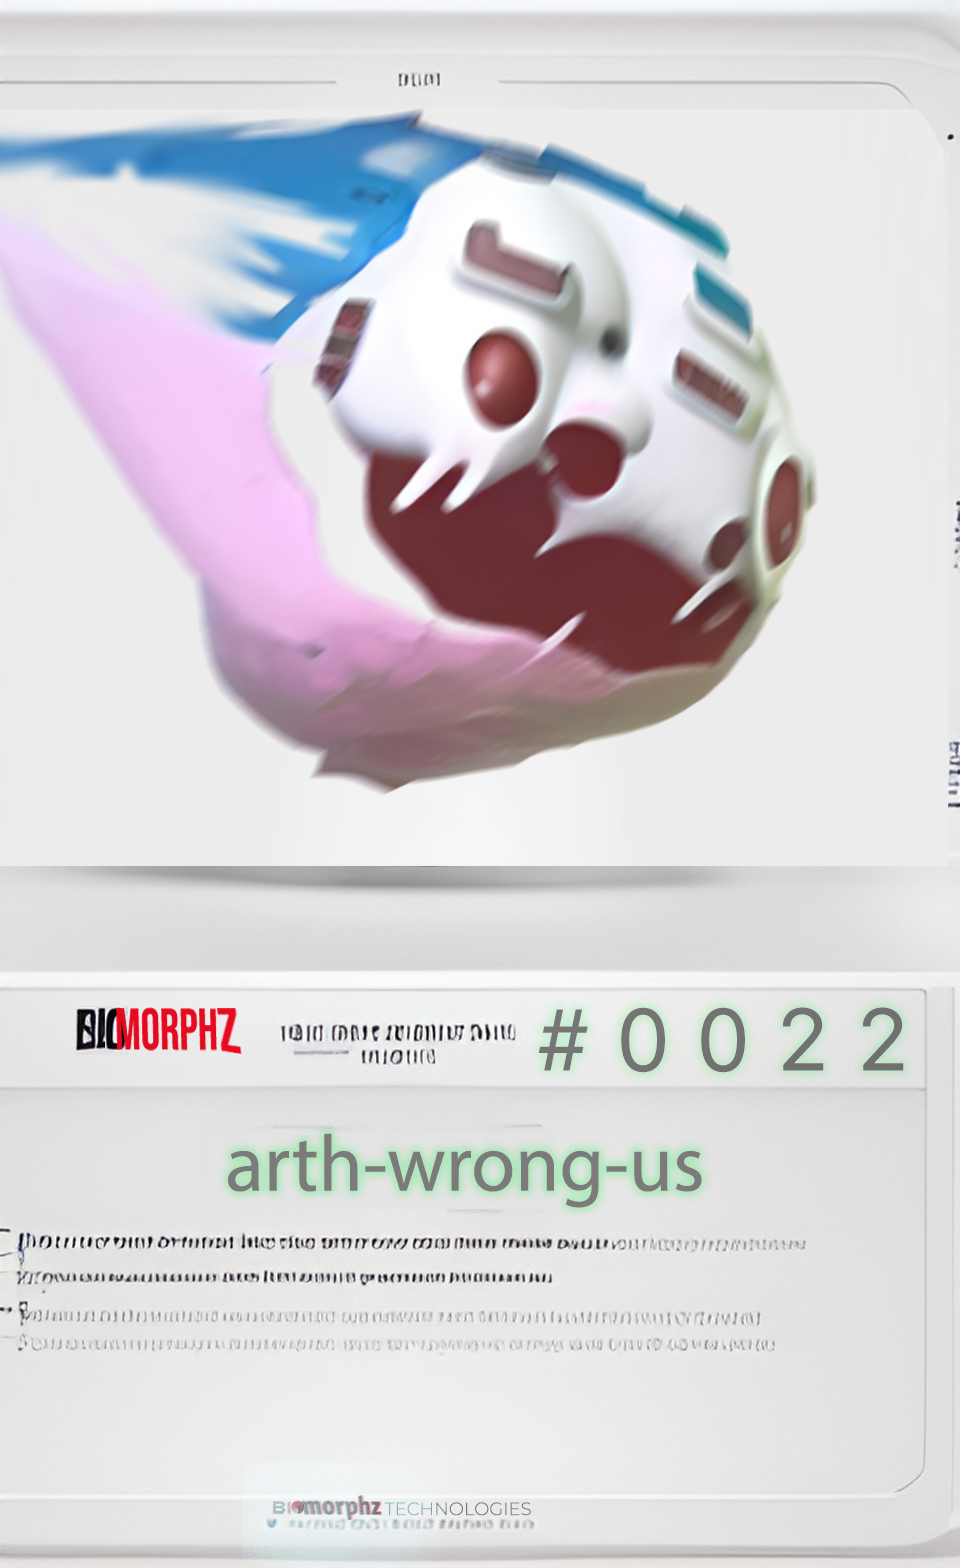 BIOmorphz #0022| arth-wrong-us